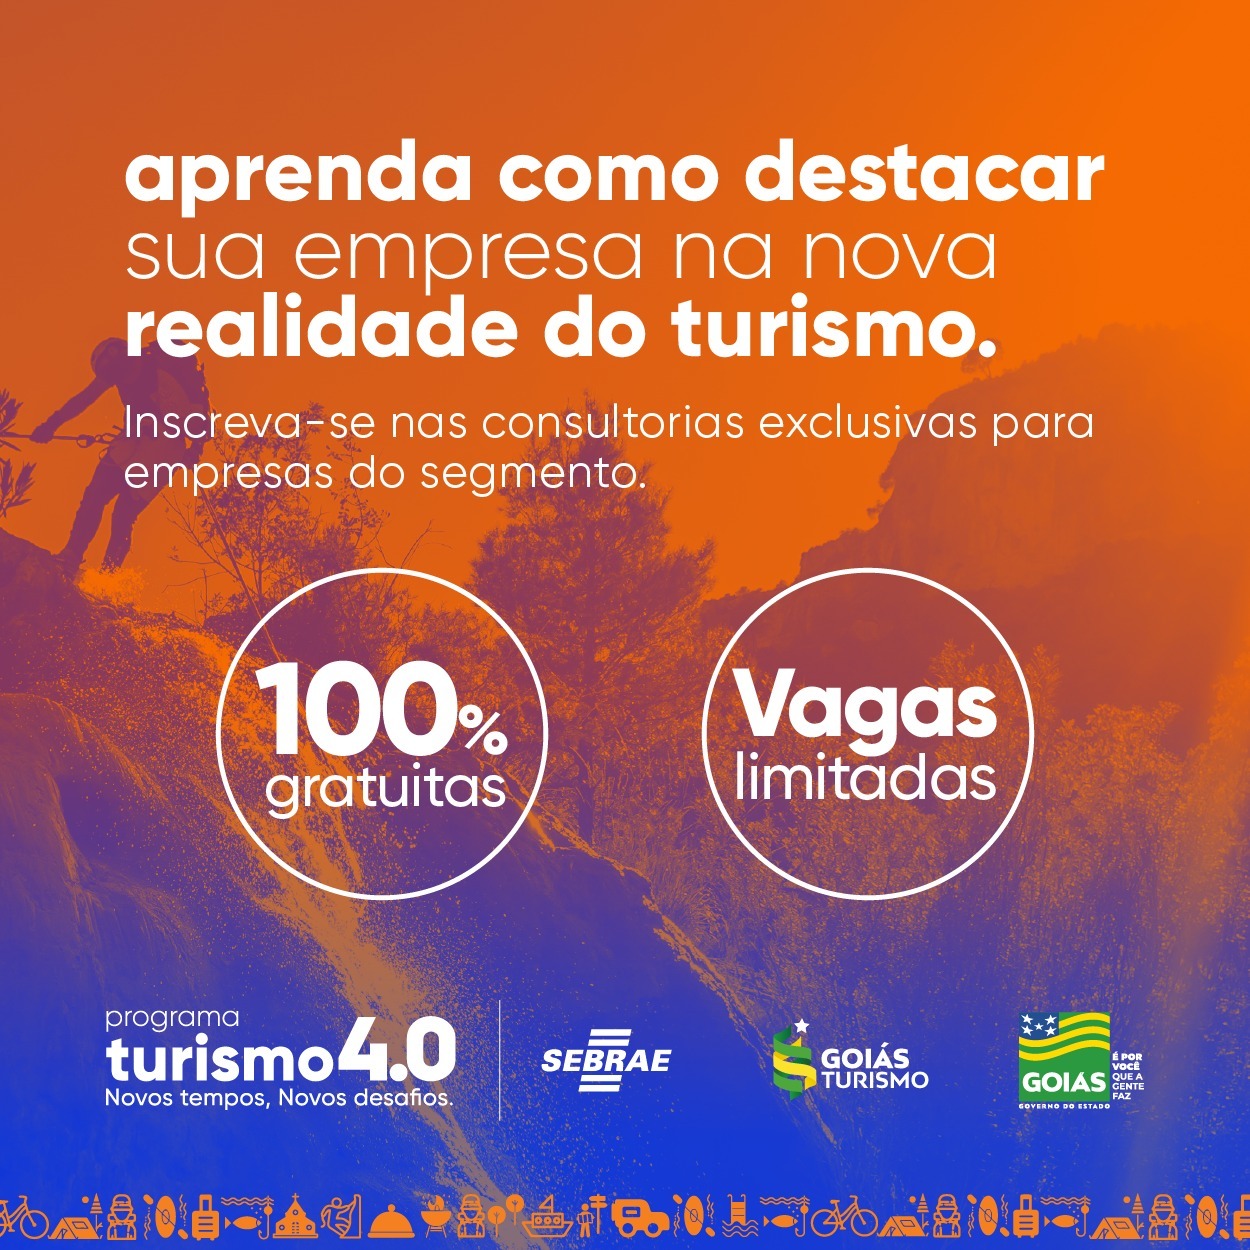 Goiás Turismo oferece consultorias gratuitas para empresas das 10 regiões turísticas do Estado